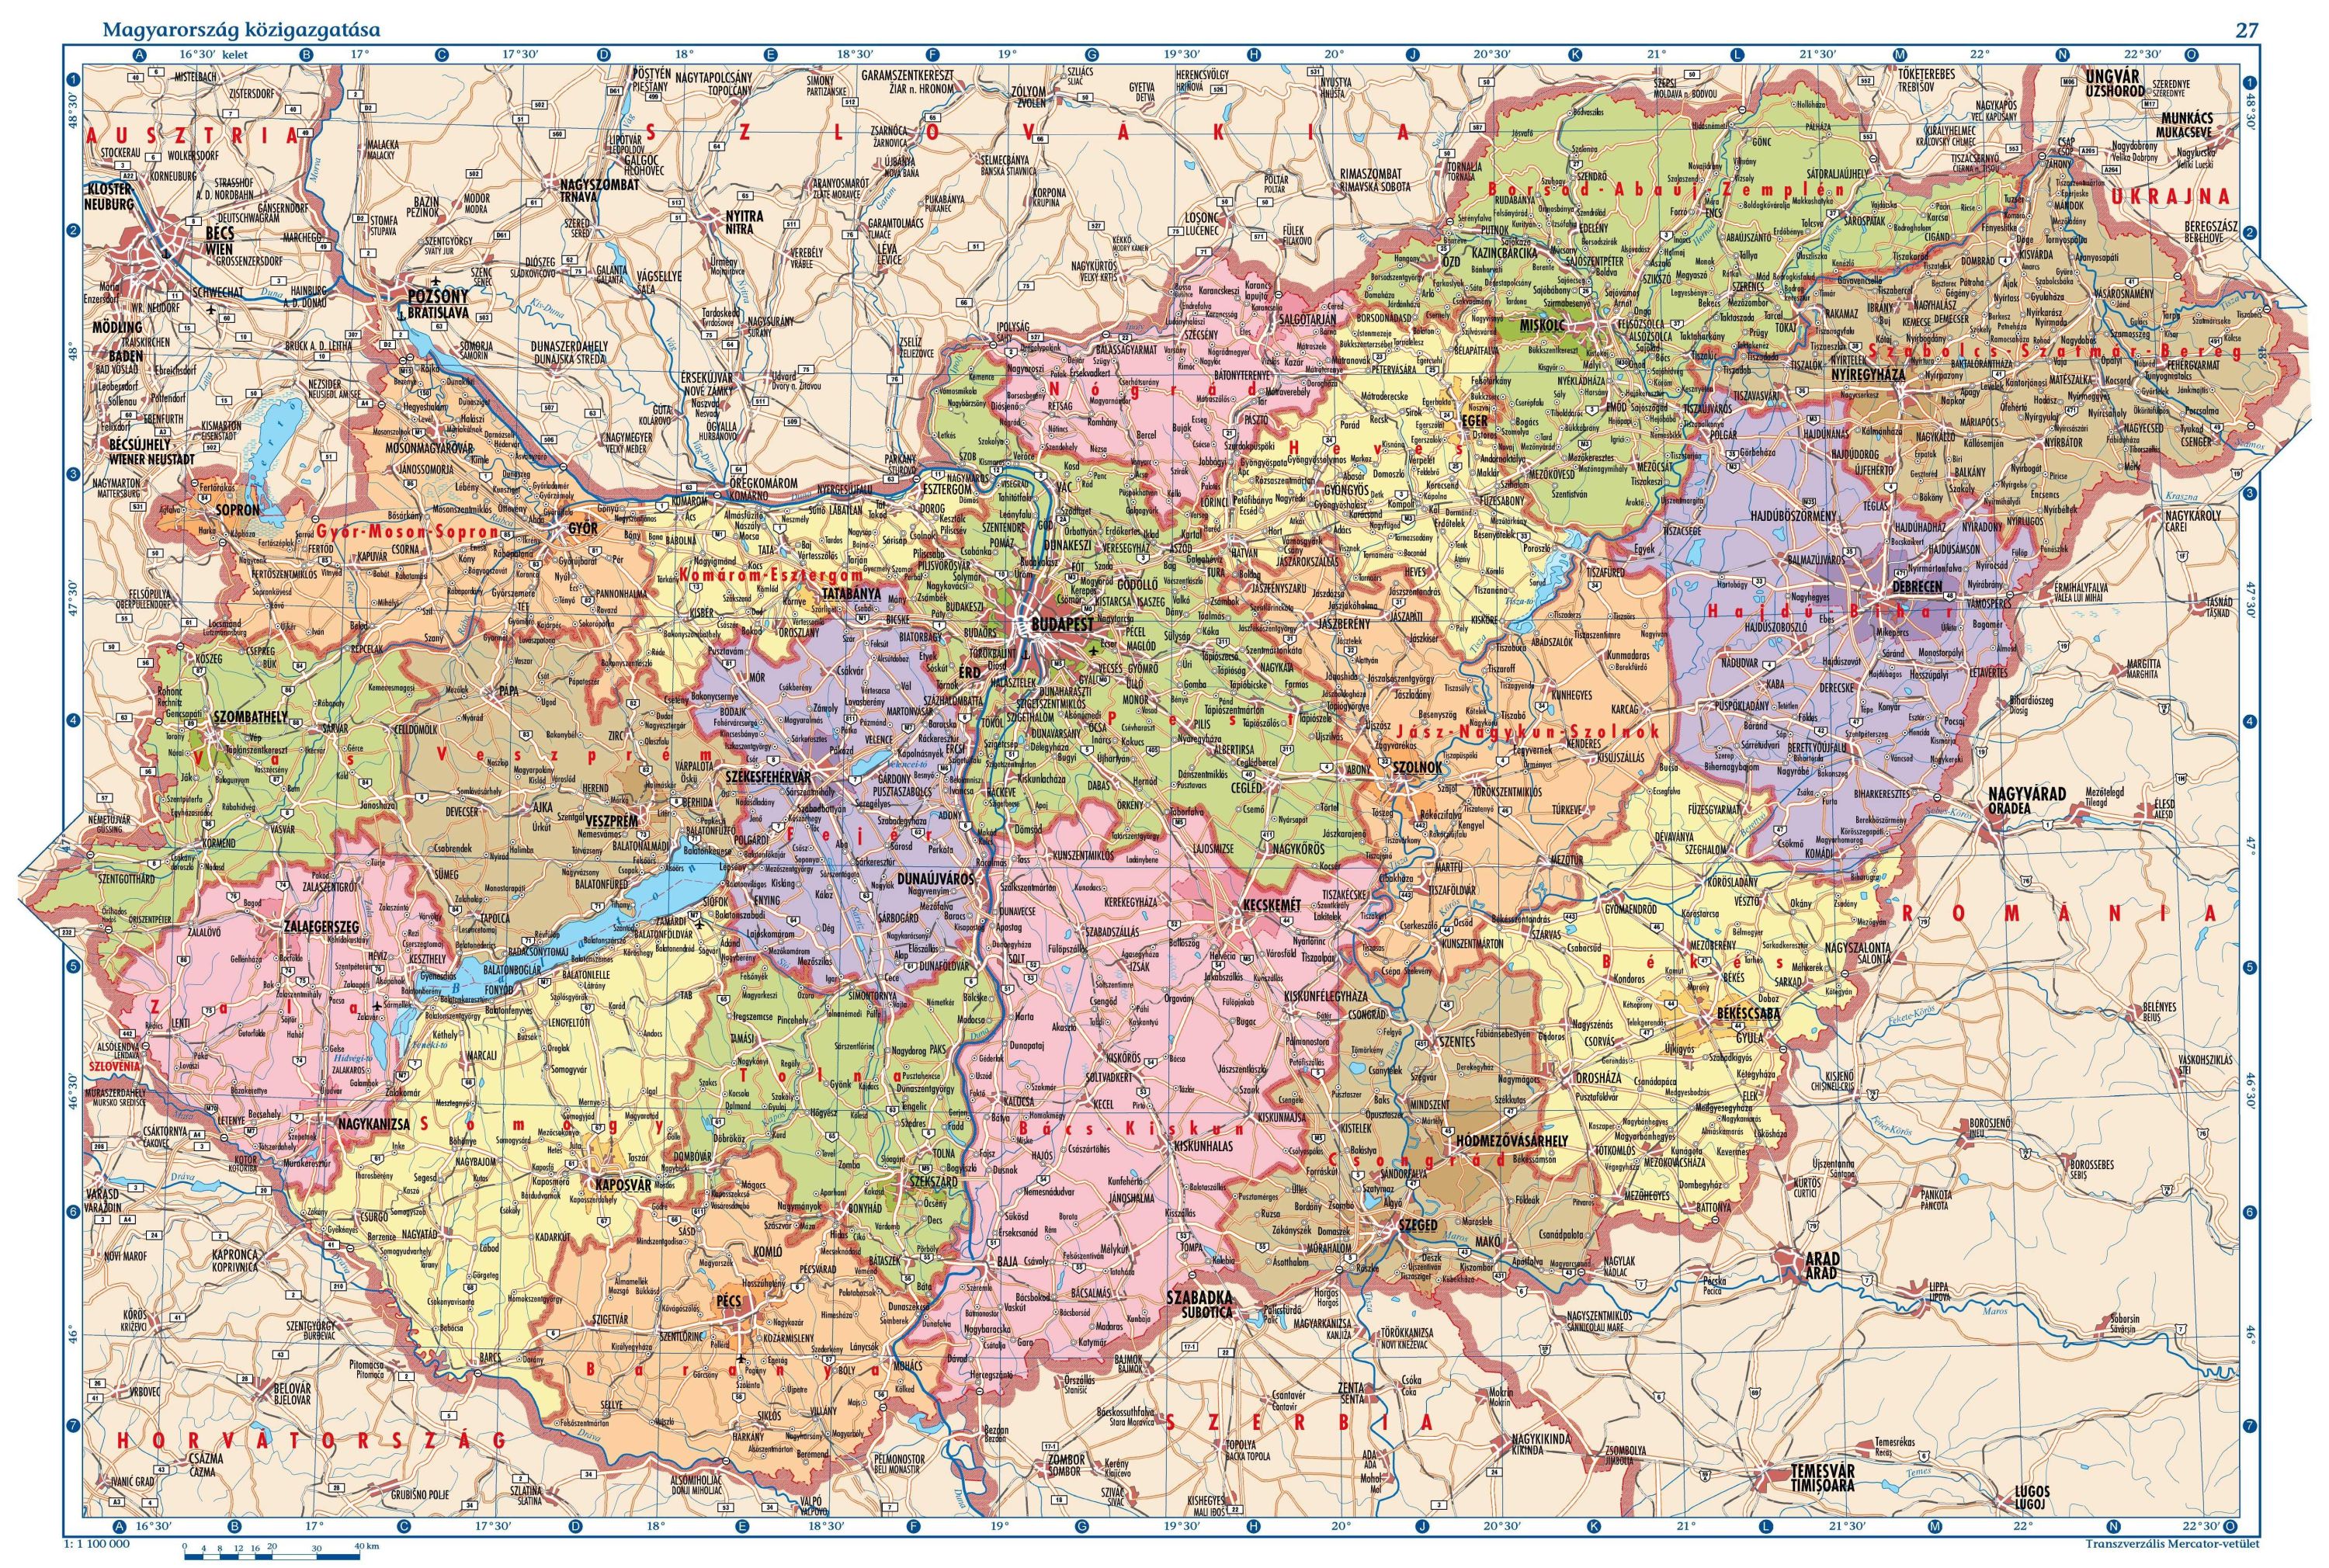 baja megye térkép Maps of Hungary | Map Library | Maps of the World baja megye térkép